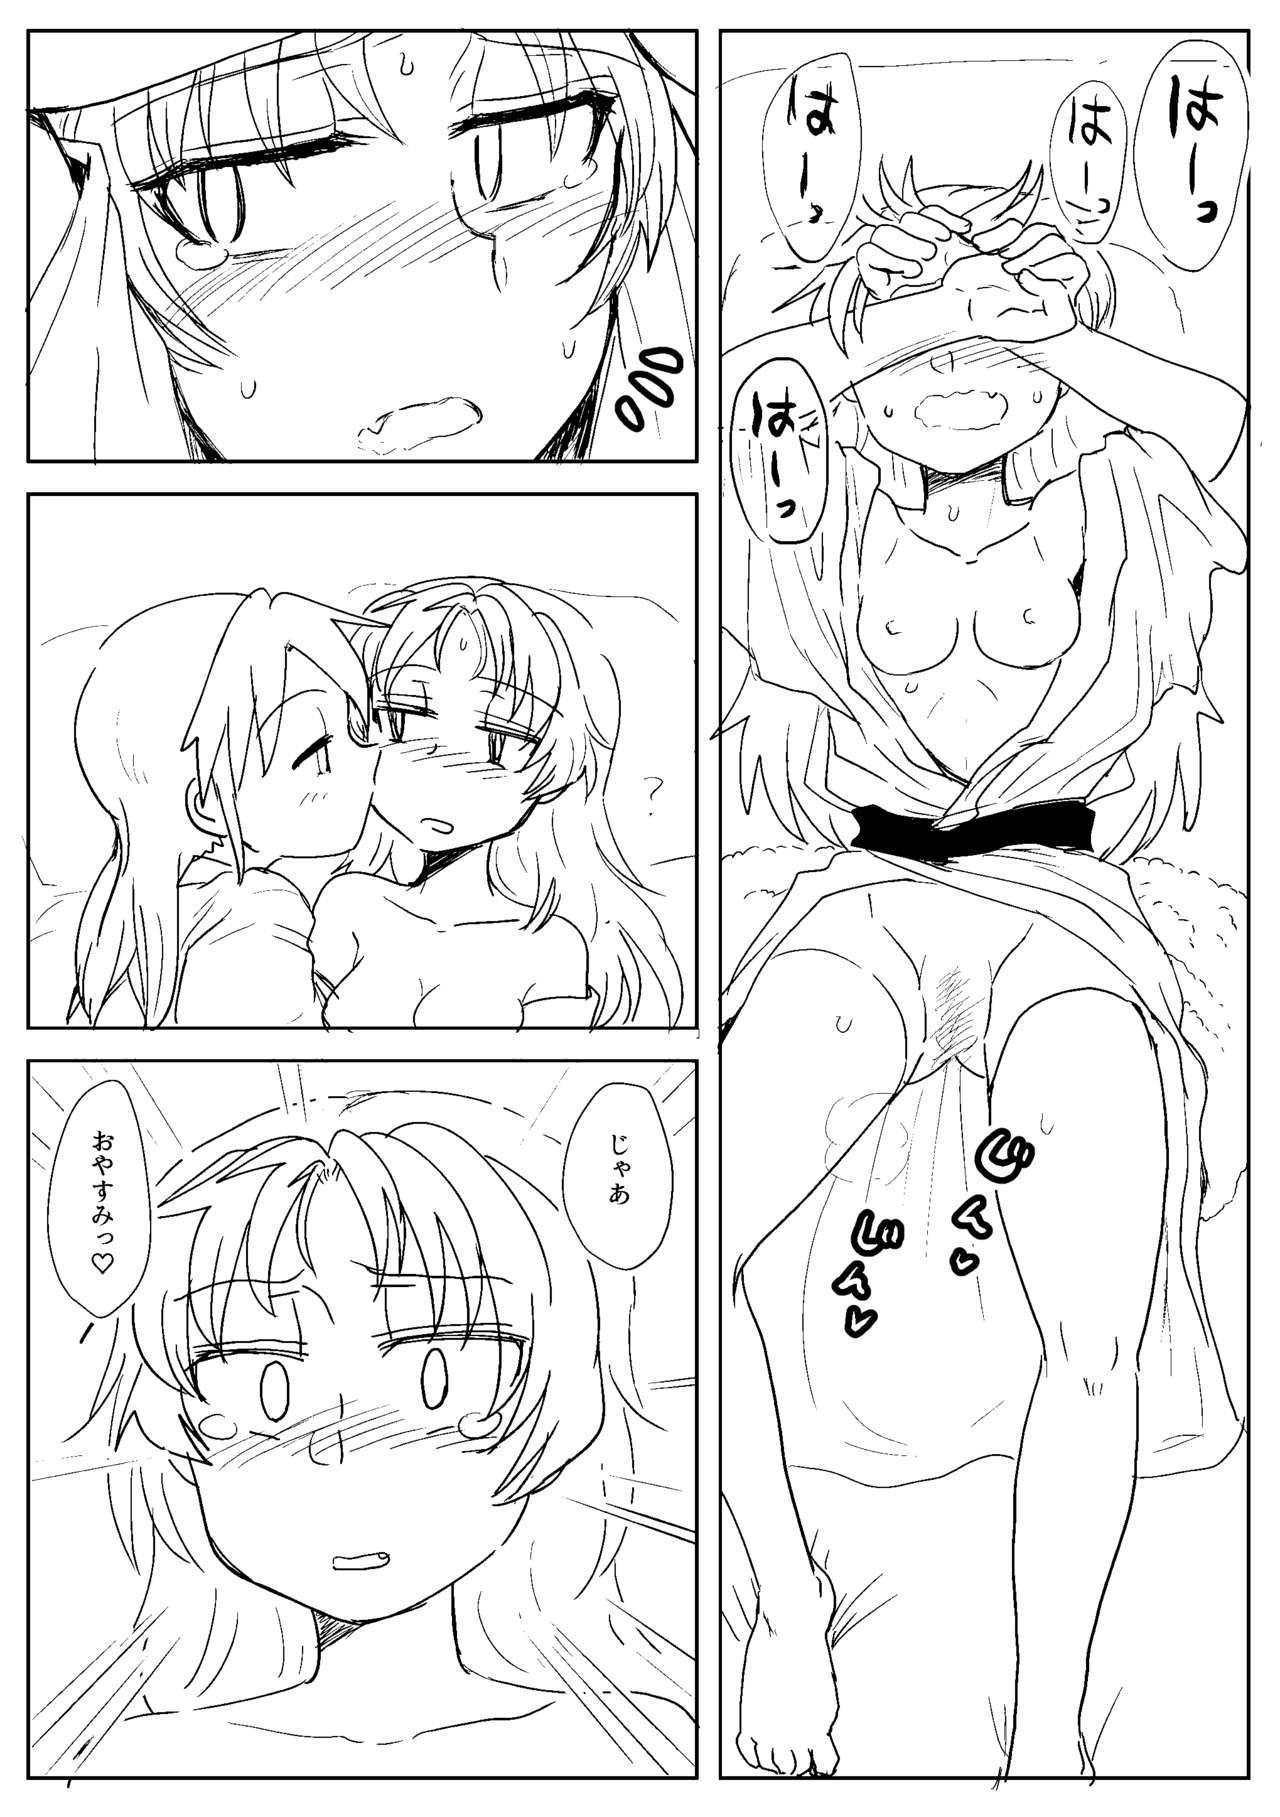 Police Sawaranai Kaname VS Sakura-san - Puella magi madoka magica Stripping - Page 6